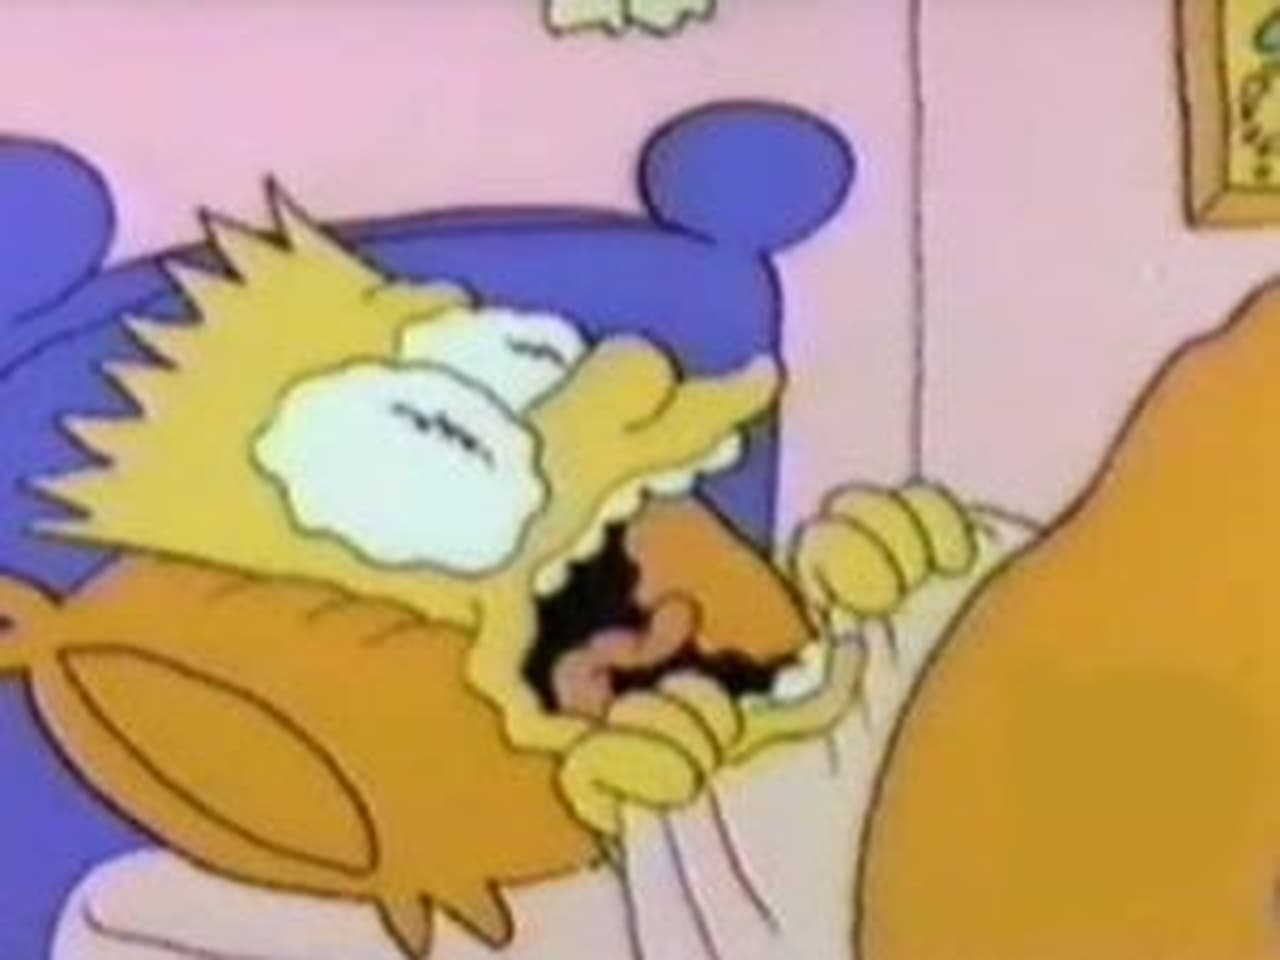 The Simpsons - Season 0 Episode 16 : World War III